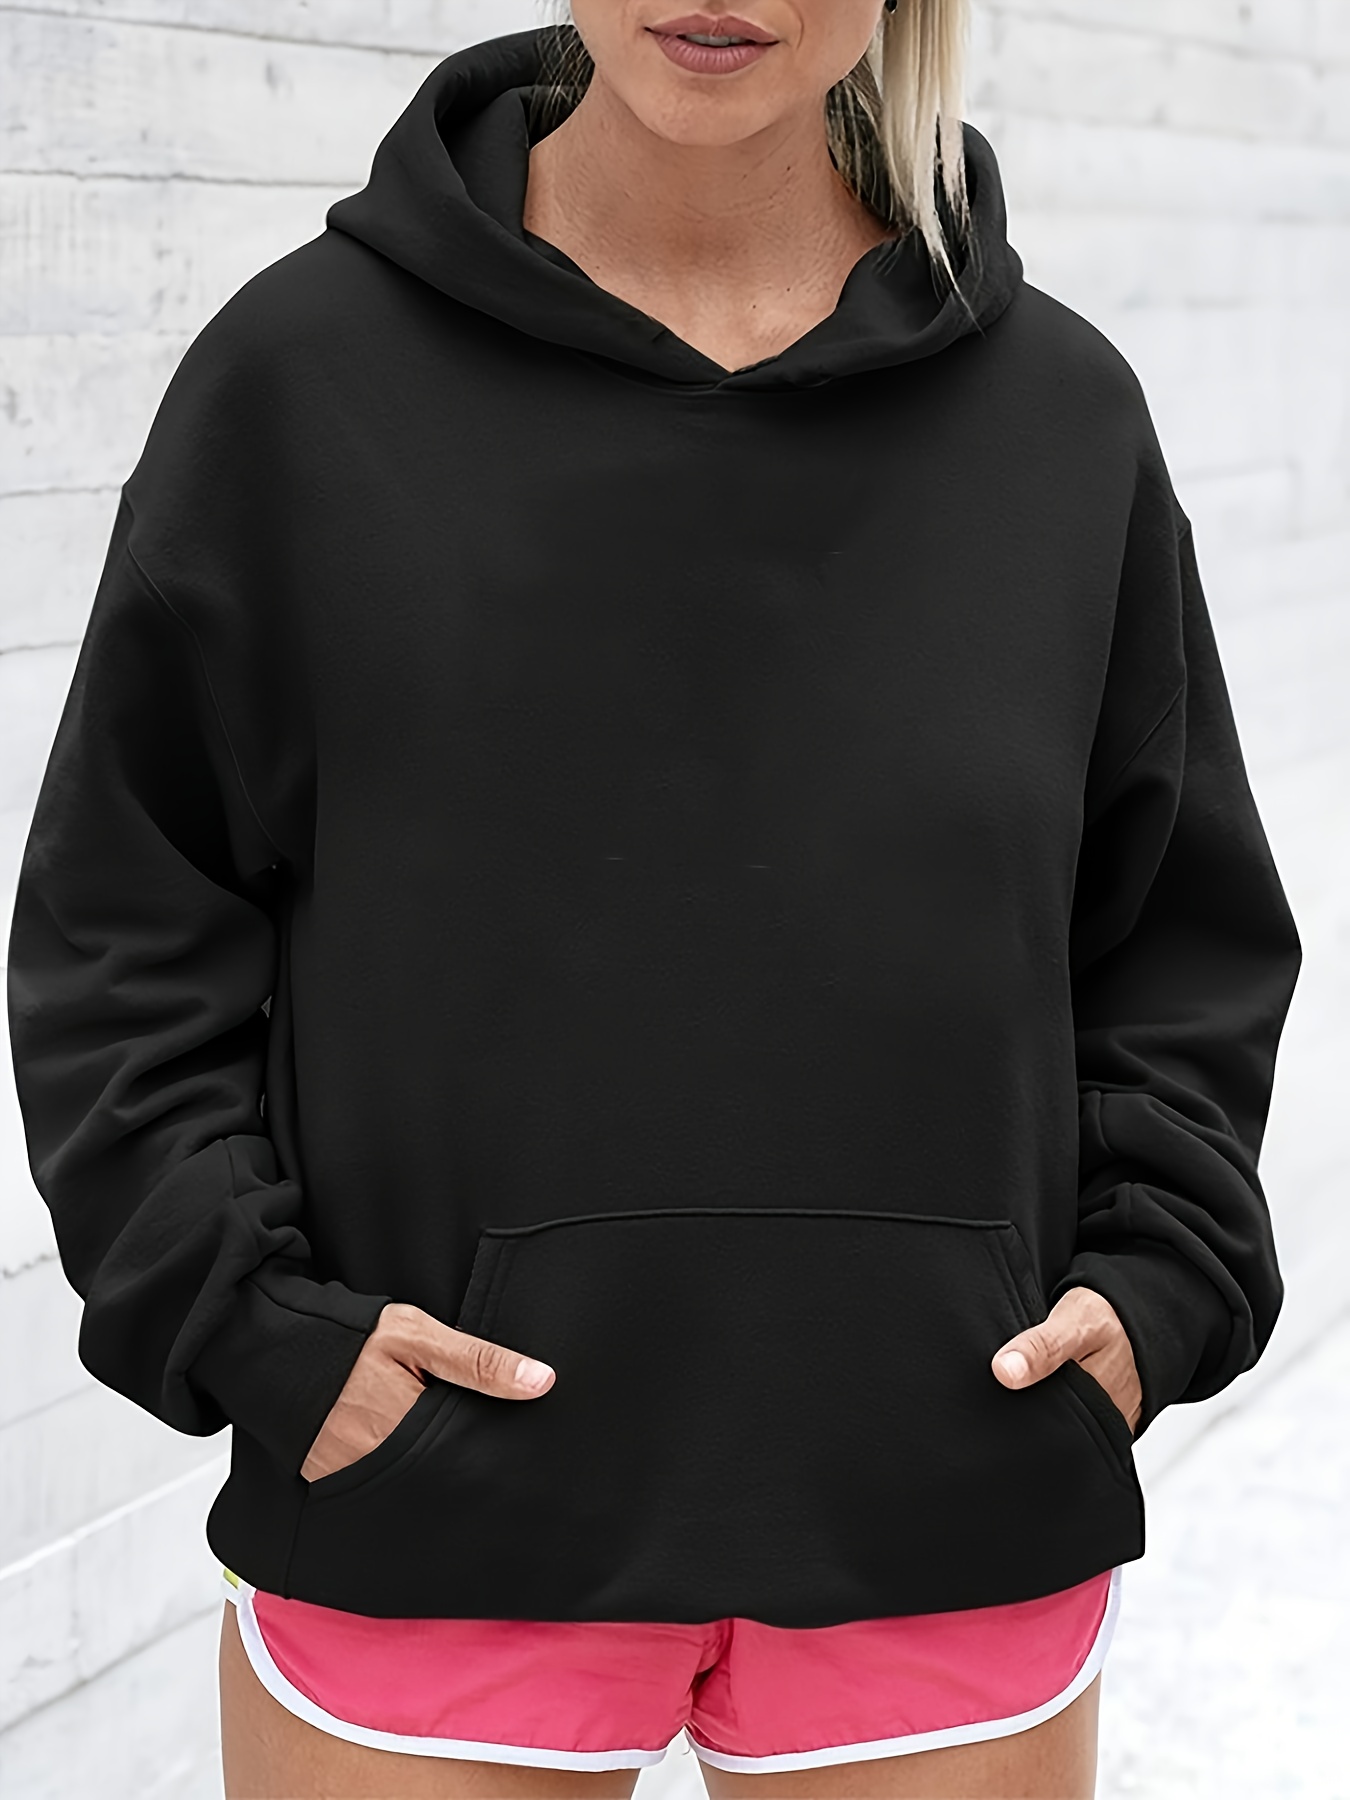 New York Mens Hoodies Pullover Print Hooded Jacket Long Sleeve Sweatshirt  Kangaroo Pocket Loose Fit with Hood Drop Shoulder